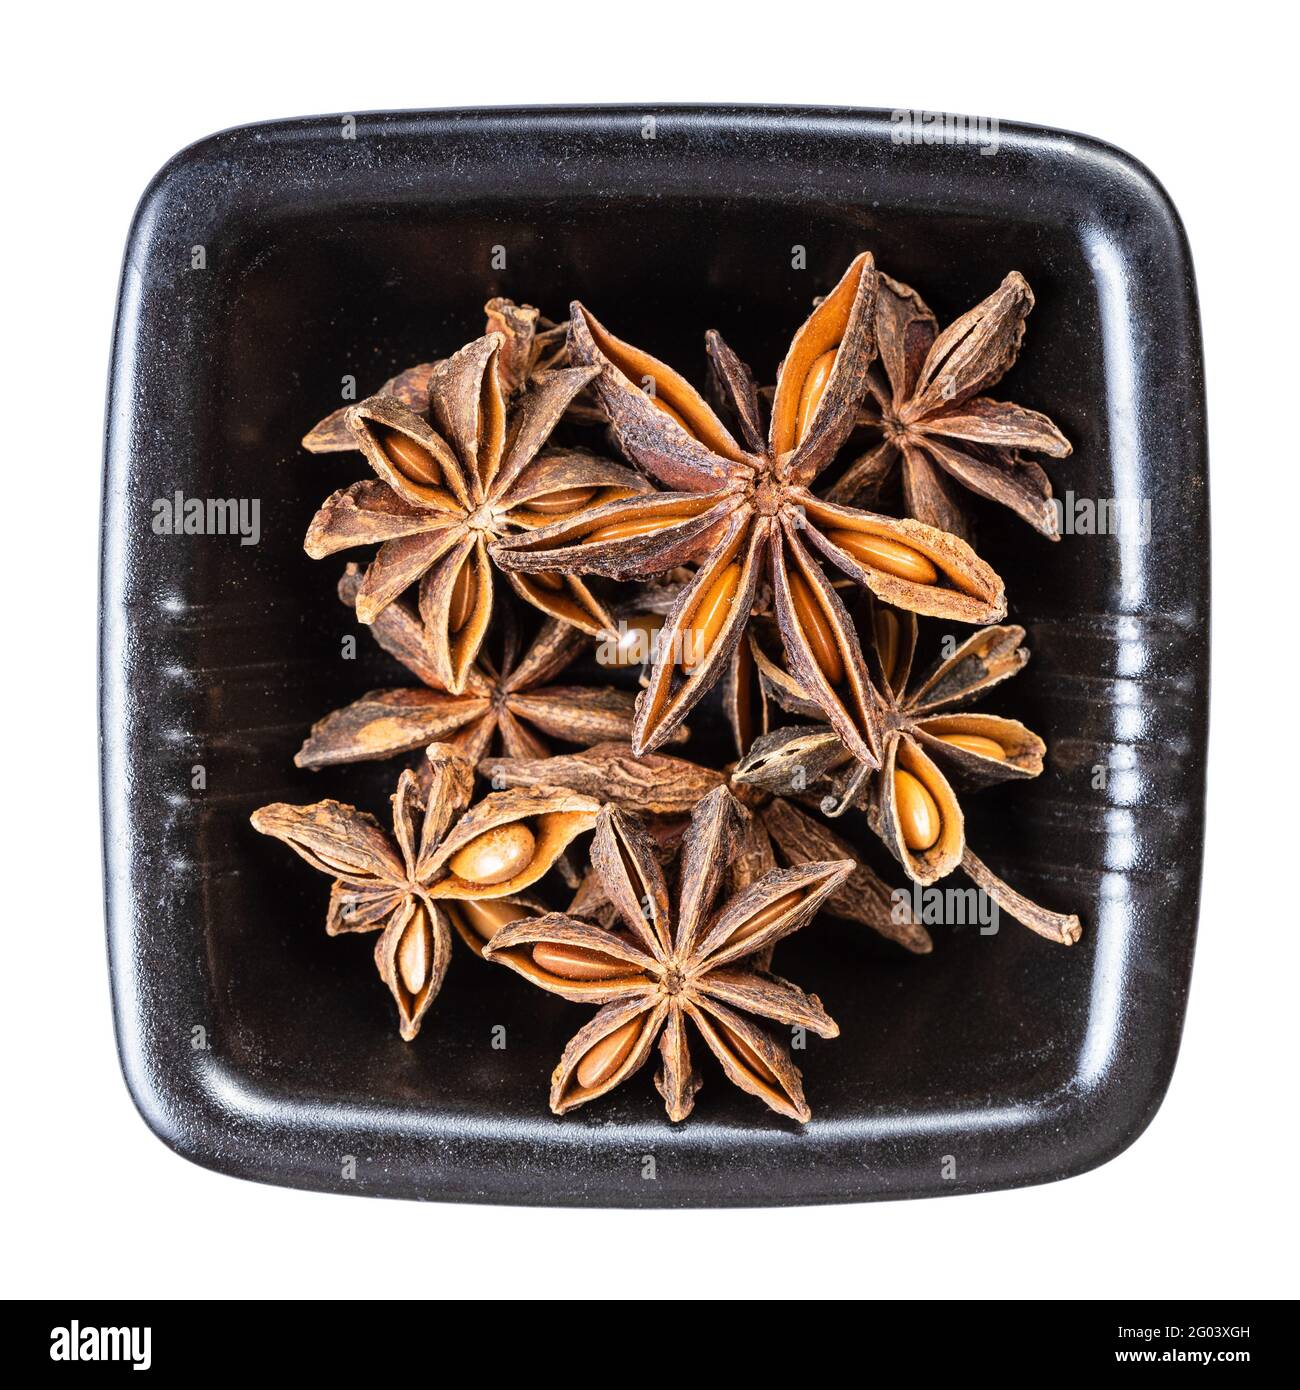 Draufsicht auf getrocknete Sternanisfrüchte (Badian) in Schwarz Schale isoliert auf weißem Hintergrund Stockfoto